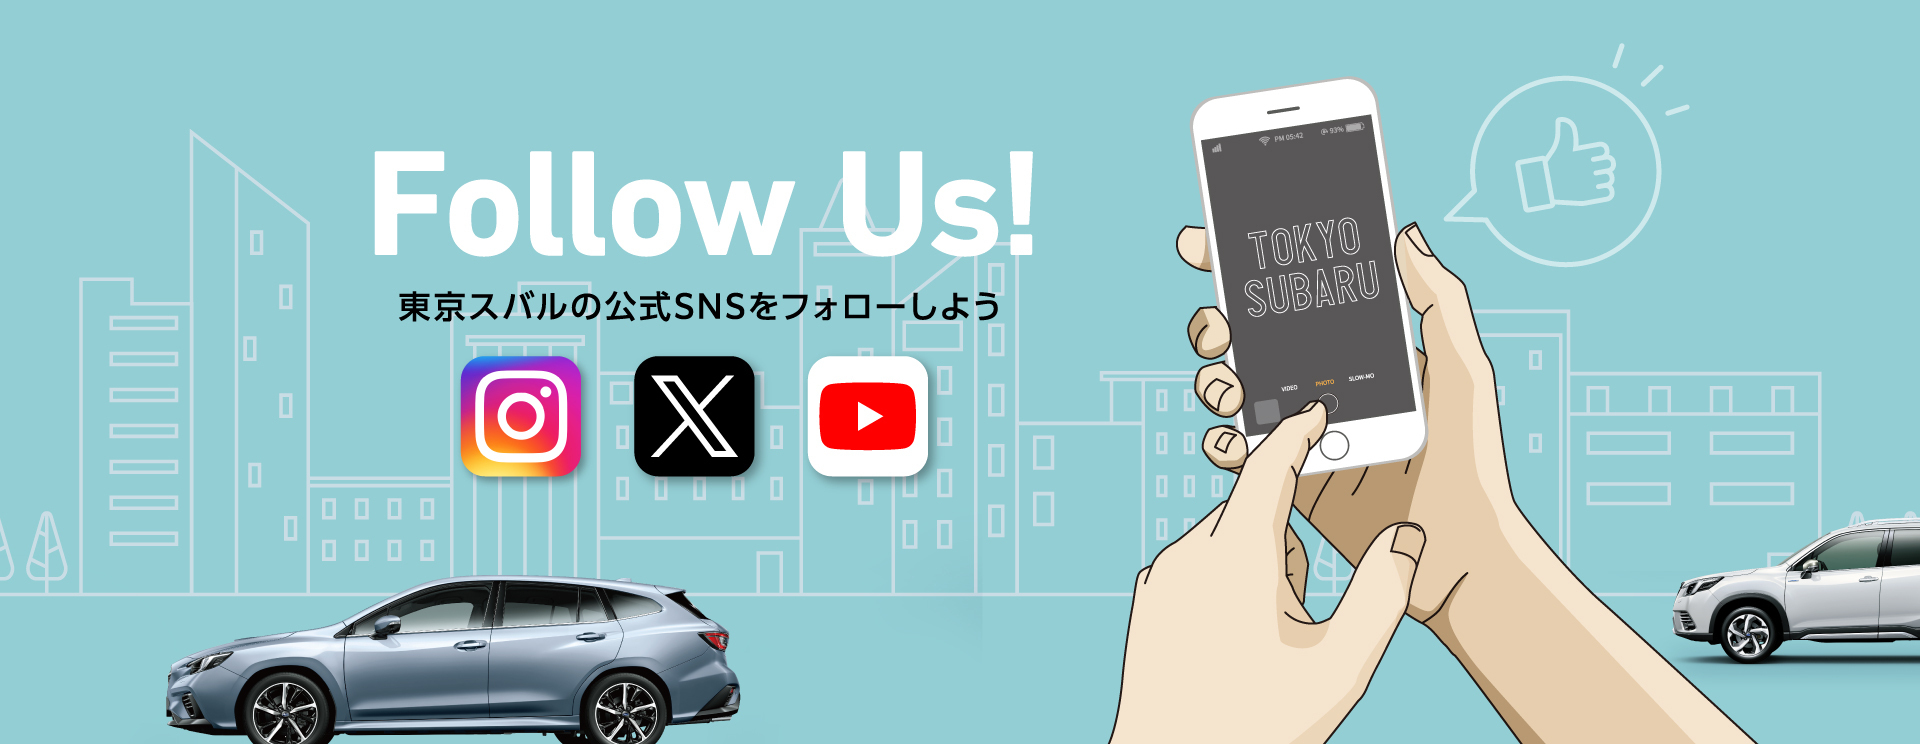 東京スバル公式SNSアカウントのご紹介 Follow Us! 東京スバルの公式SNSをフォローしよう